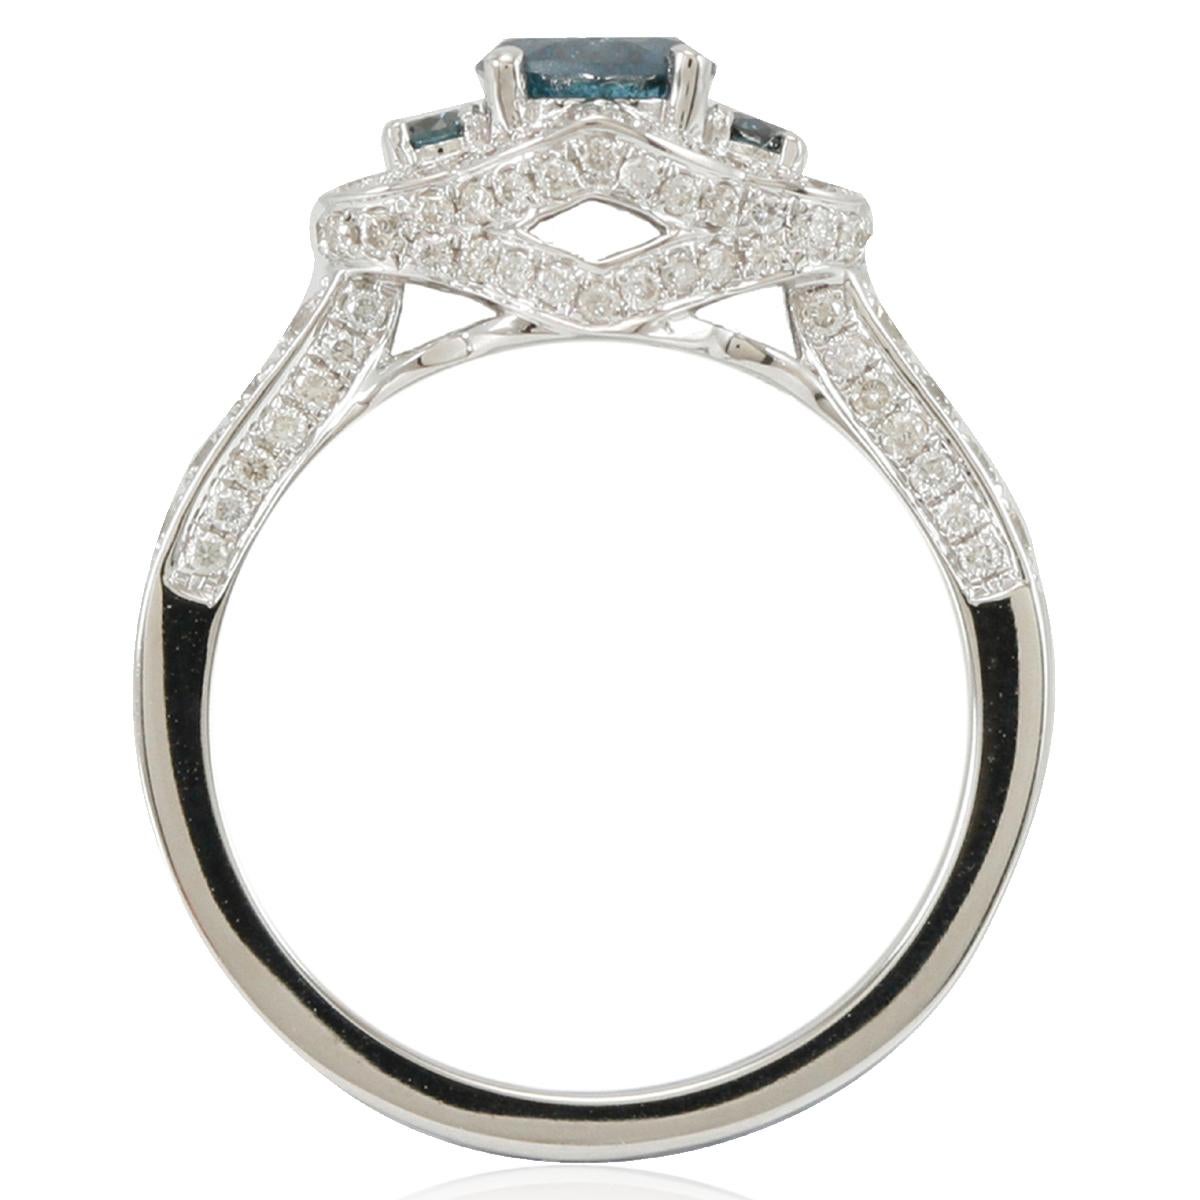 Cette bague de fiançailles unique de Suzy Levian, d'une beauté saisissante, est un solitaire en diamant bleu à trois pierres avec un halo pavé de diamants blancs. Élégamment réalisée en or blanc 14K, cette bague présente une pierre centrale en